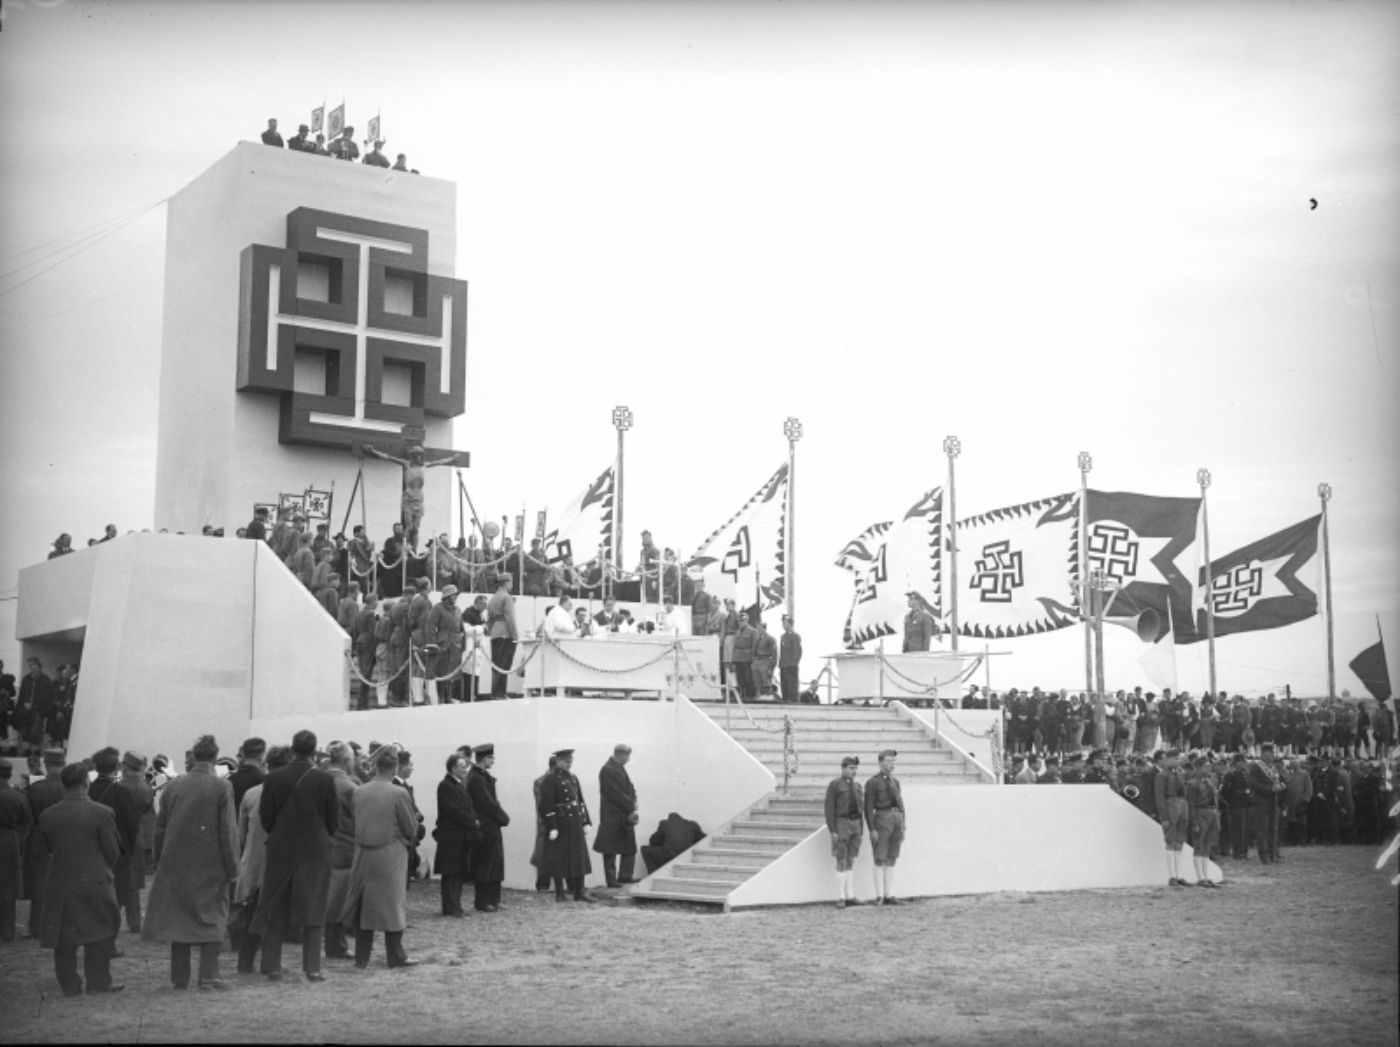 Abbildung eines Großappells der Vaterländischen Front zur Illustration. Das schwarz-weiß-Foto zeigt eine Rednertribüne mit Turm und Kruckenkreuz, mehrere Fahnen und viele Menschen.